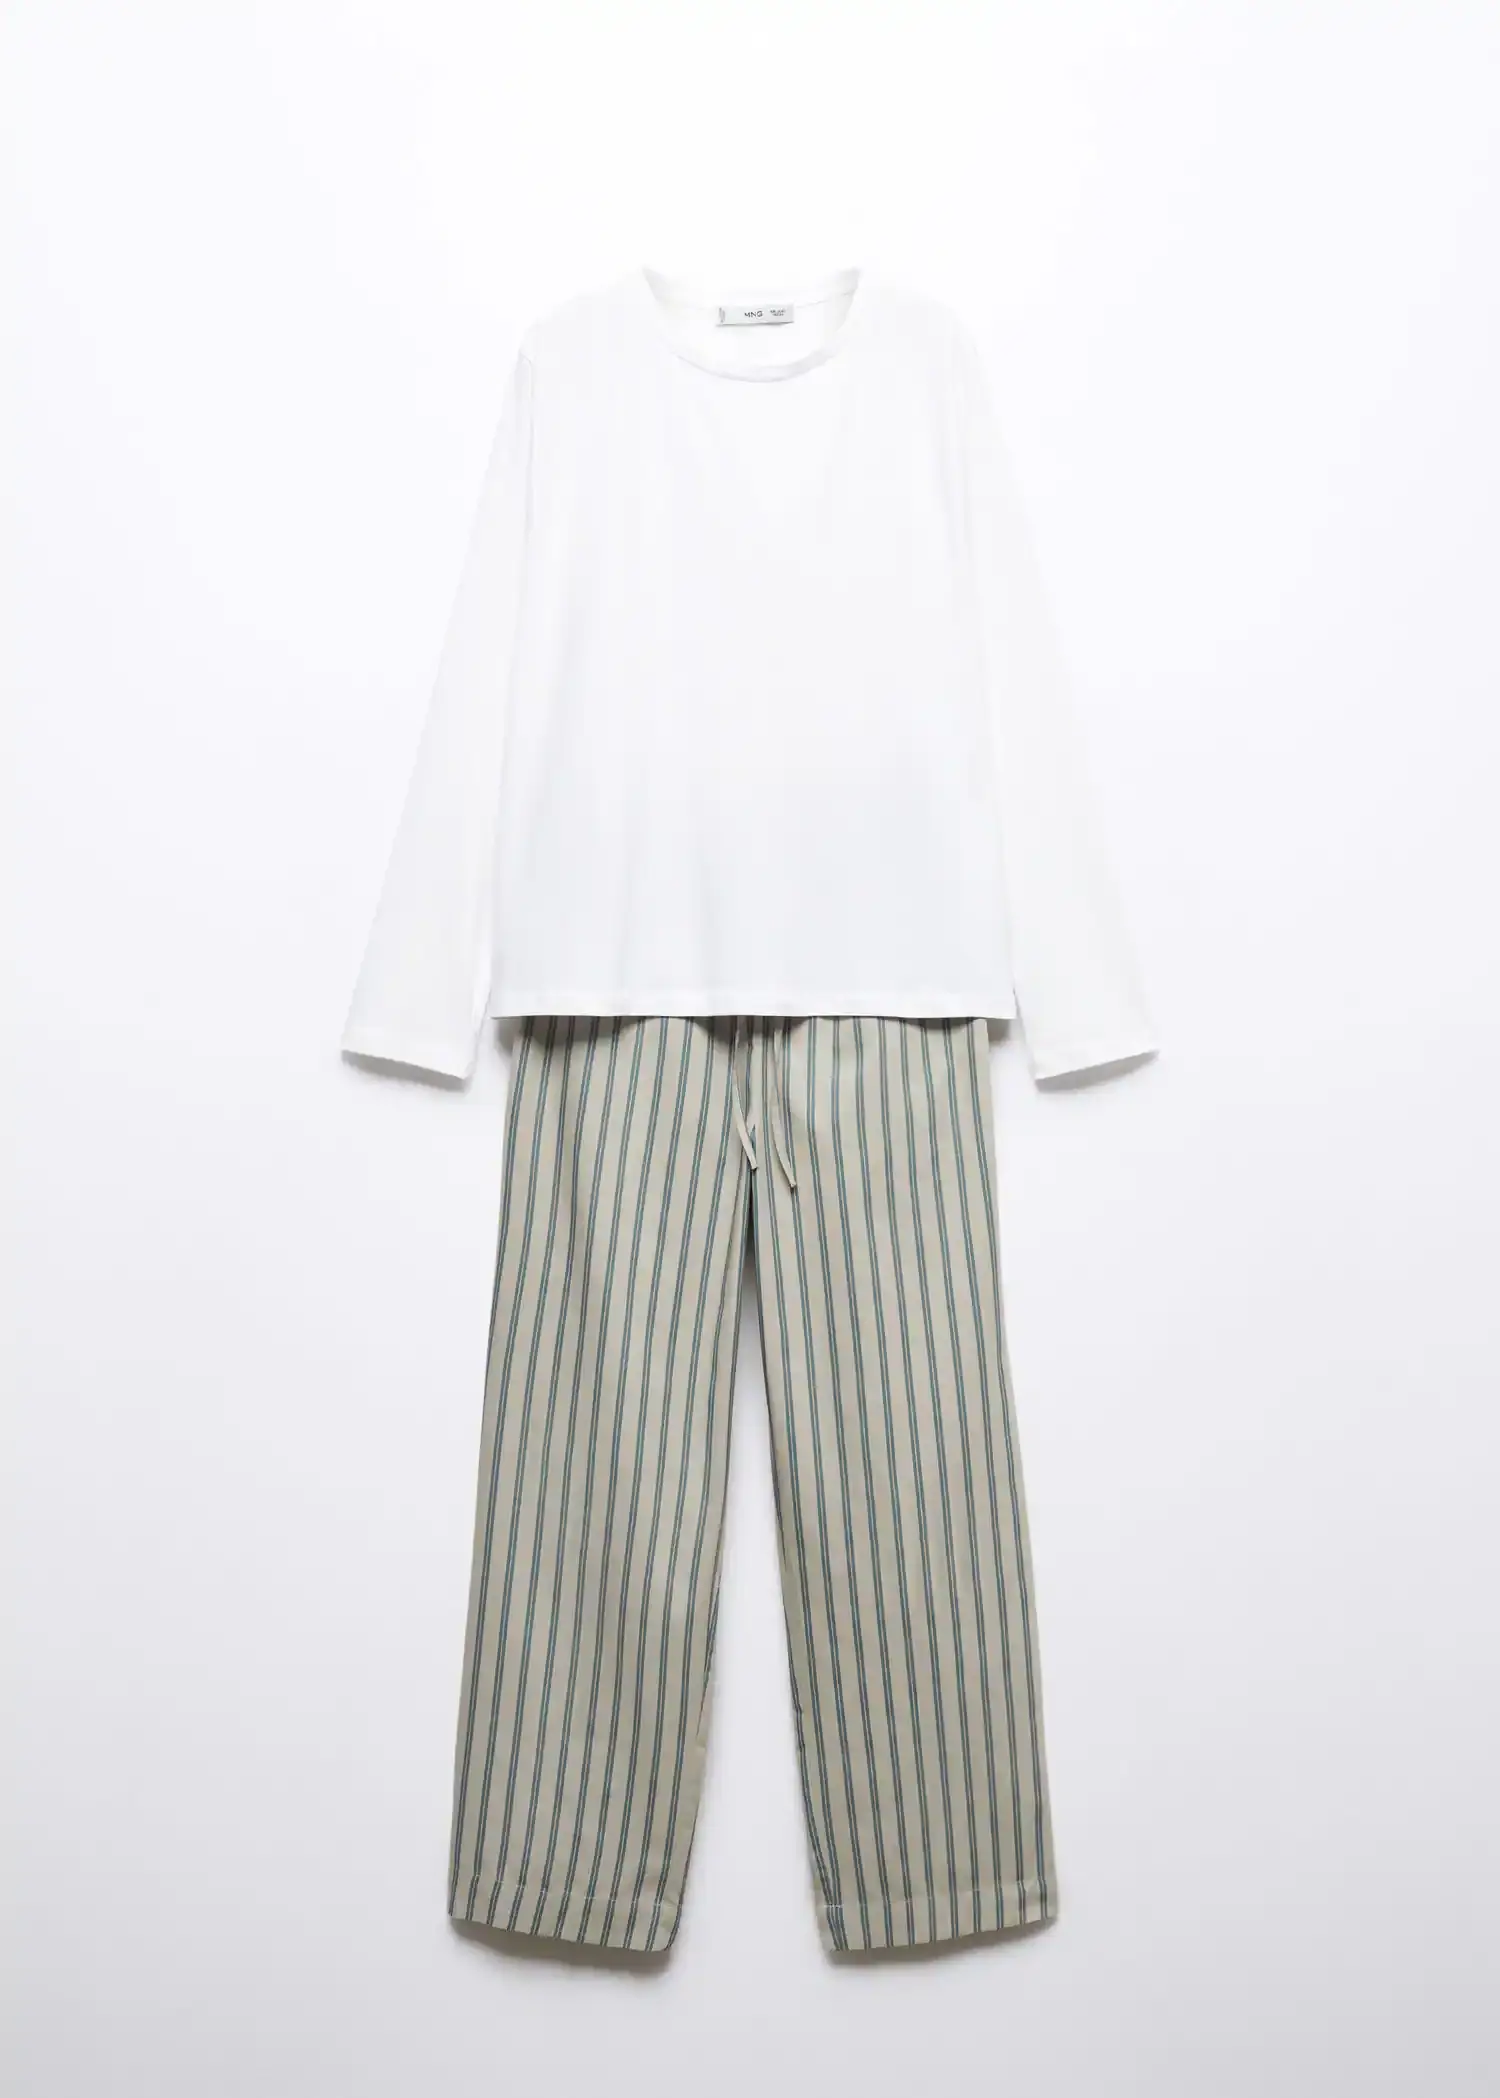 Mango Langer Baumwoll-Pyjama mit Streifenmuster. 1